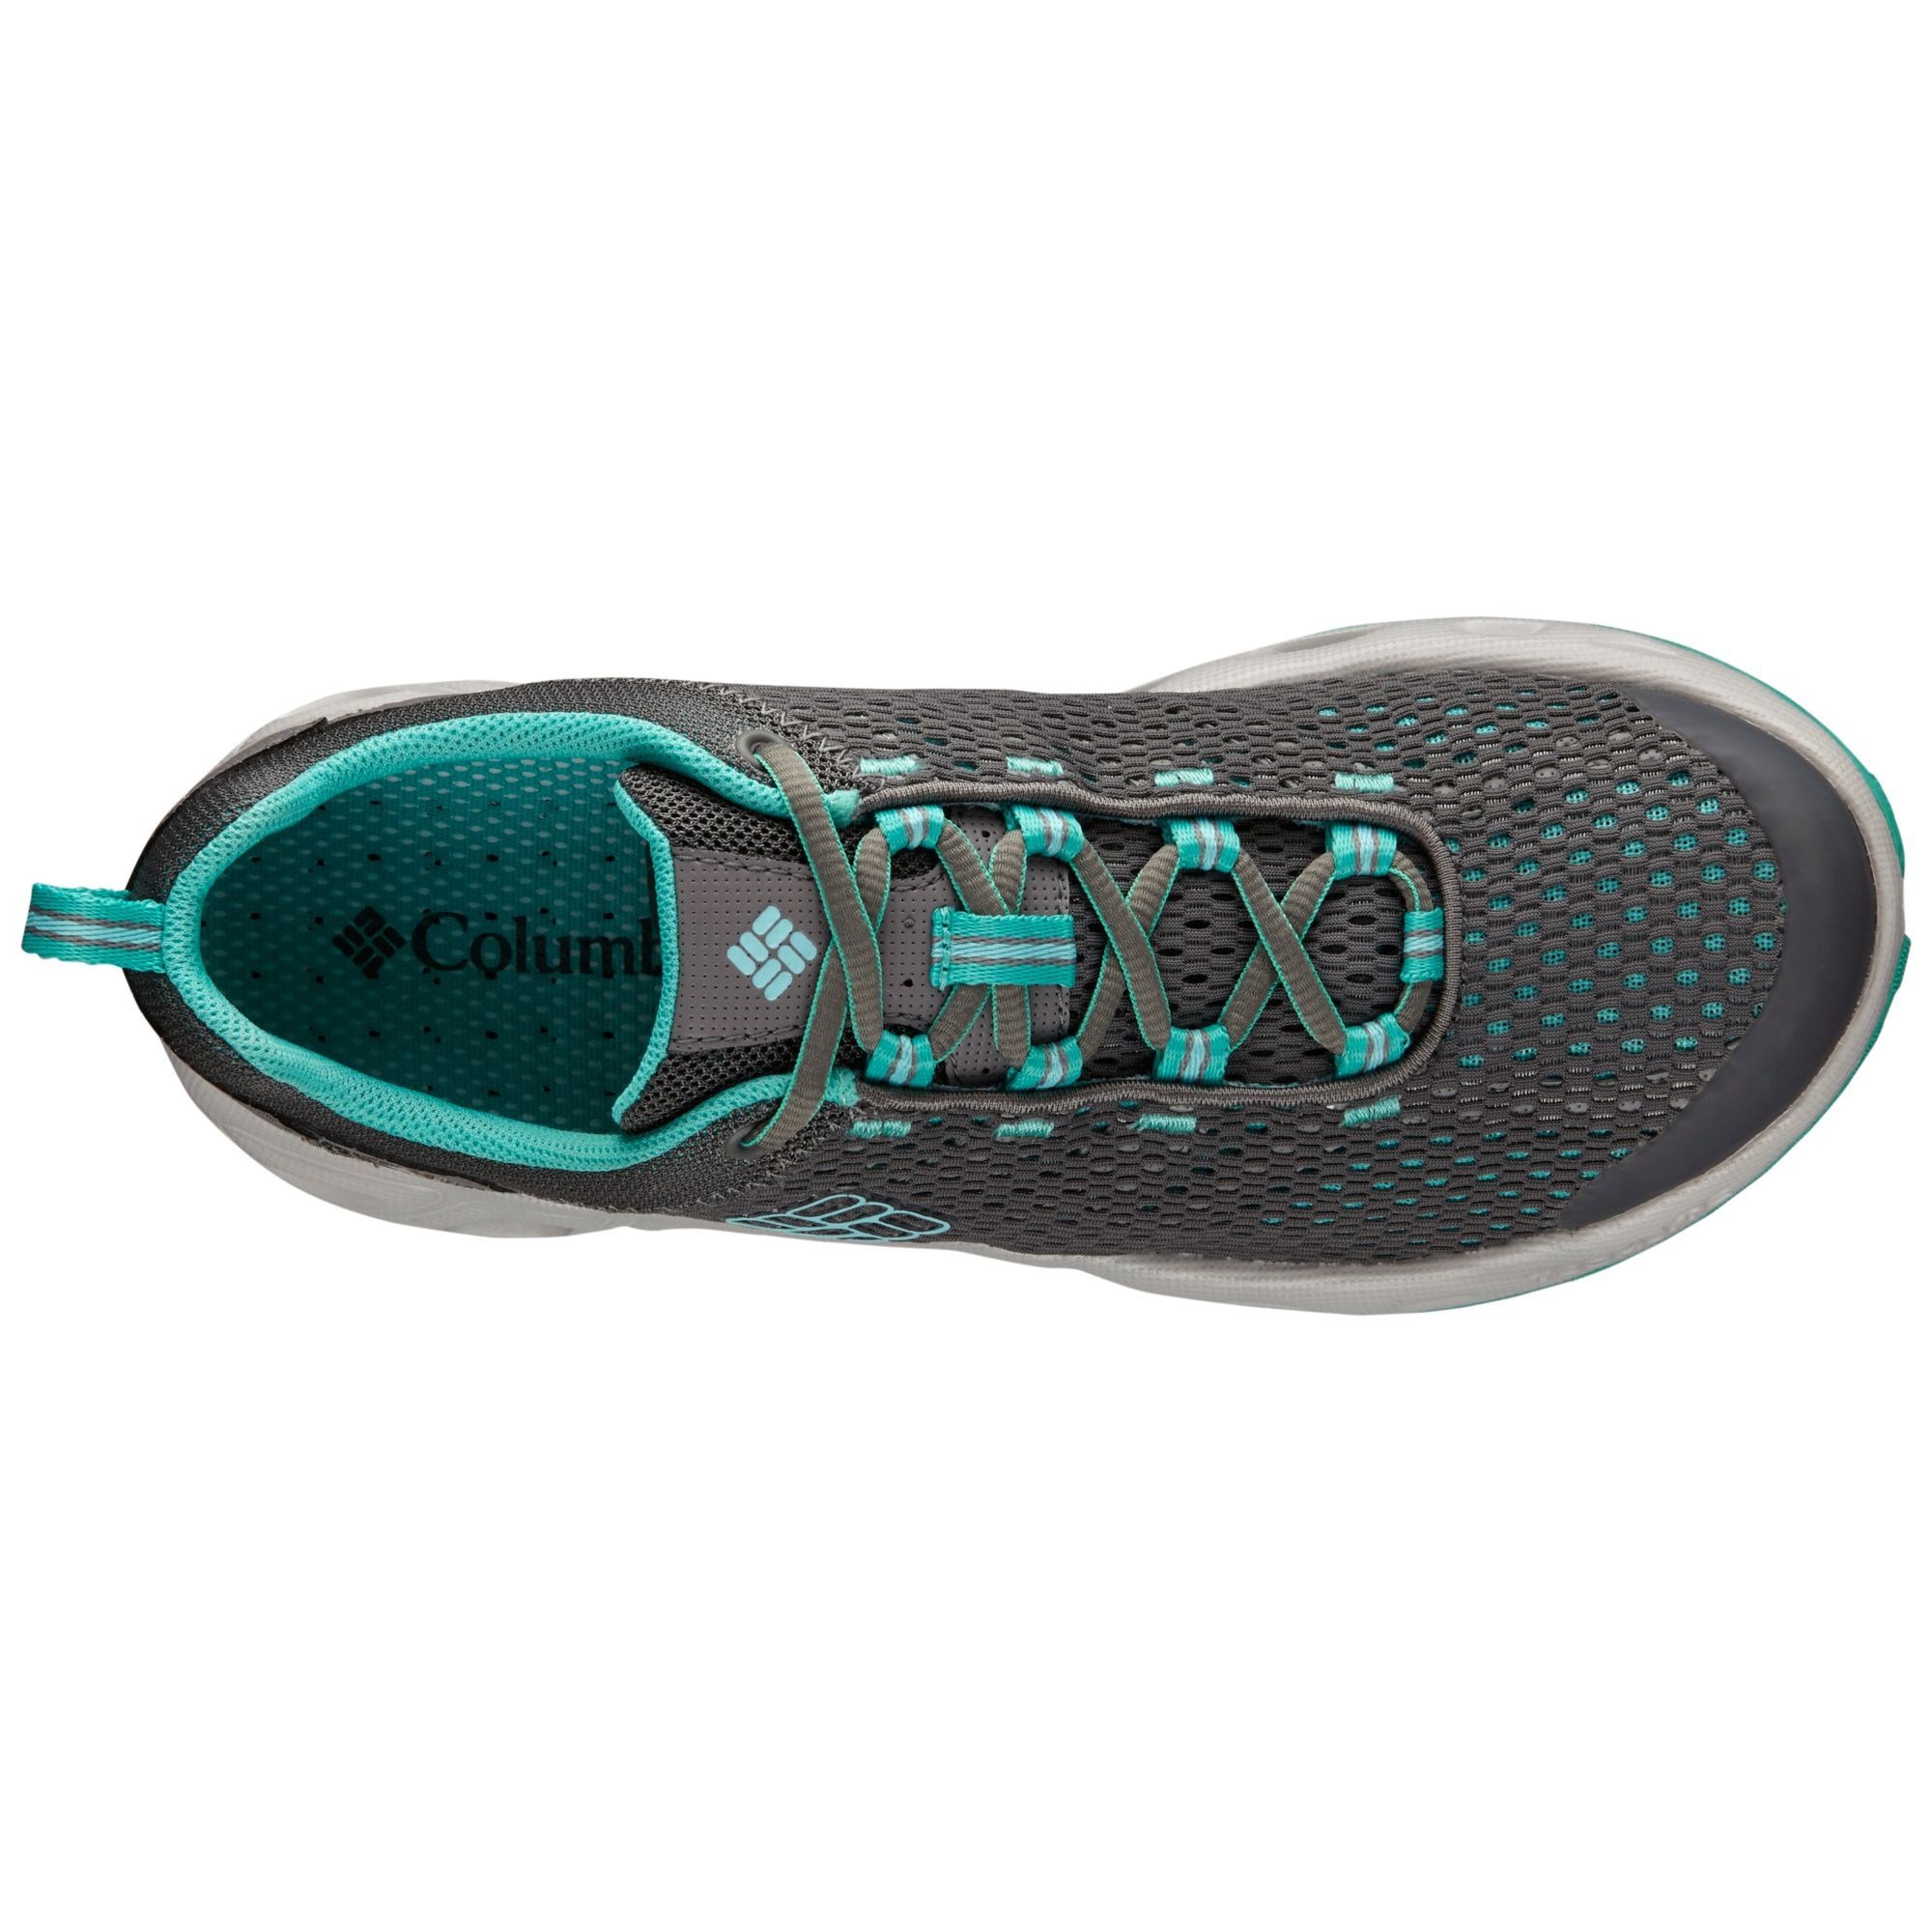 Columbia Drainmaker III Bayan Spor Ayakkabı Ürün kodu: BL3954-052 | Etichet  Sport